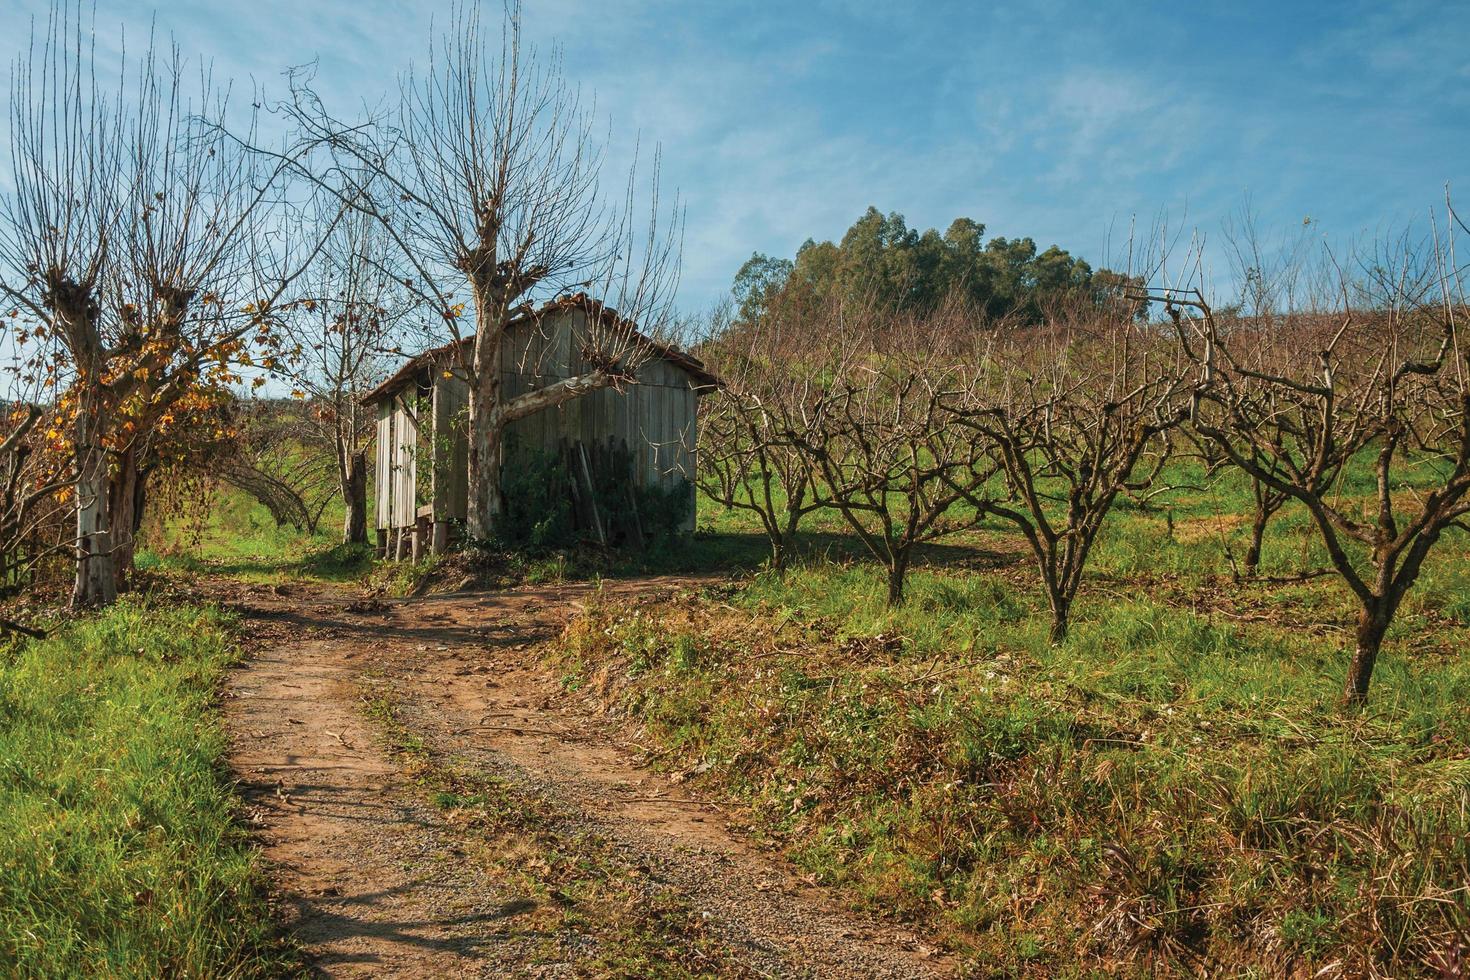 bento goncalves, brazilië - 12 juli 2019. landelijk herfstlandschap met een kleine armoedige hut naast bladloze platanen, in een wijngaard in de buurt van bento goncalves. foto